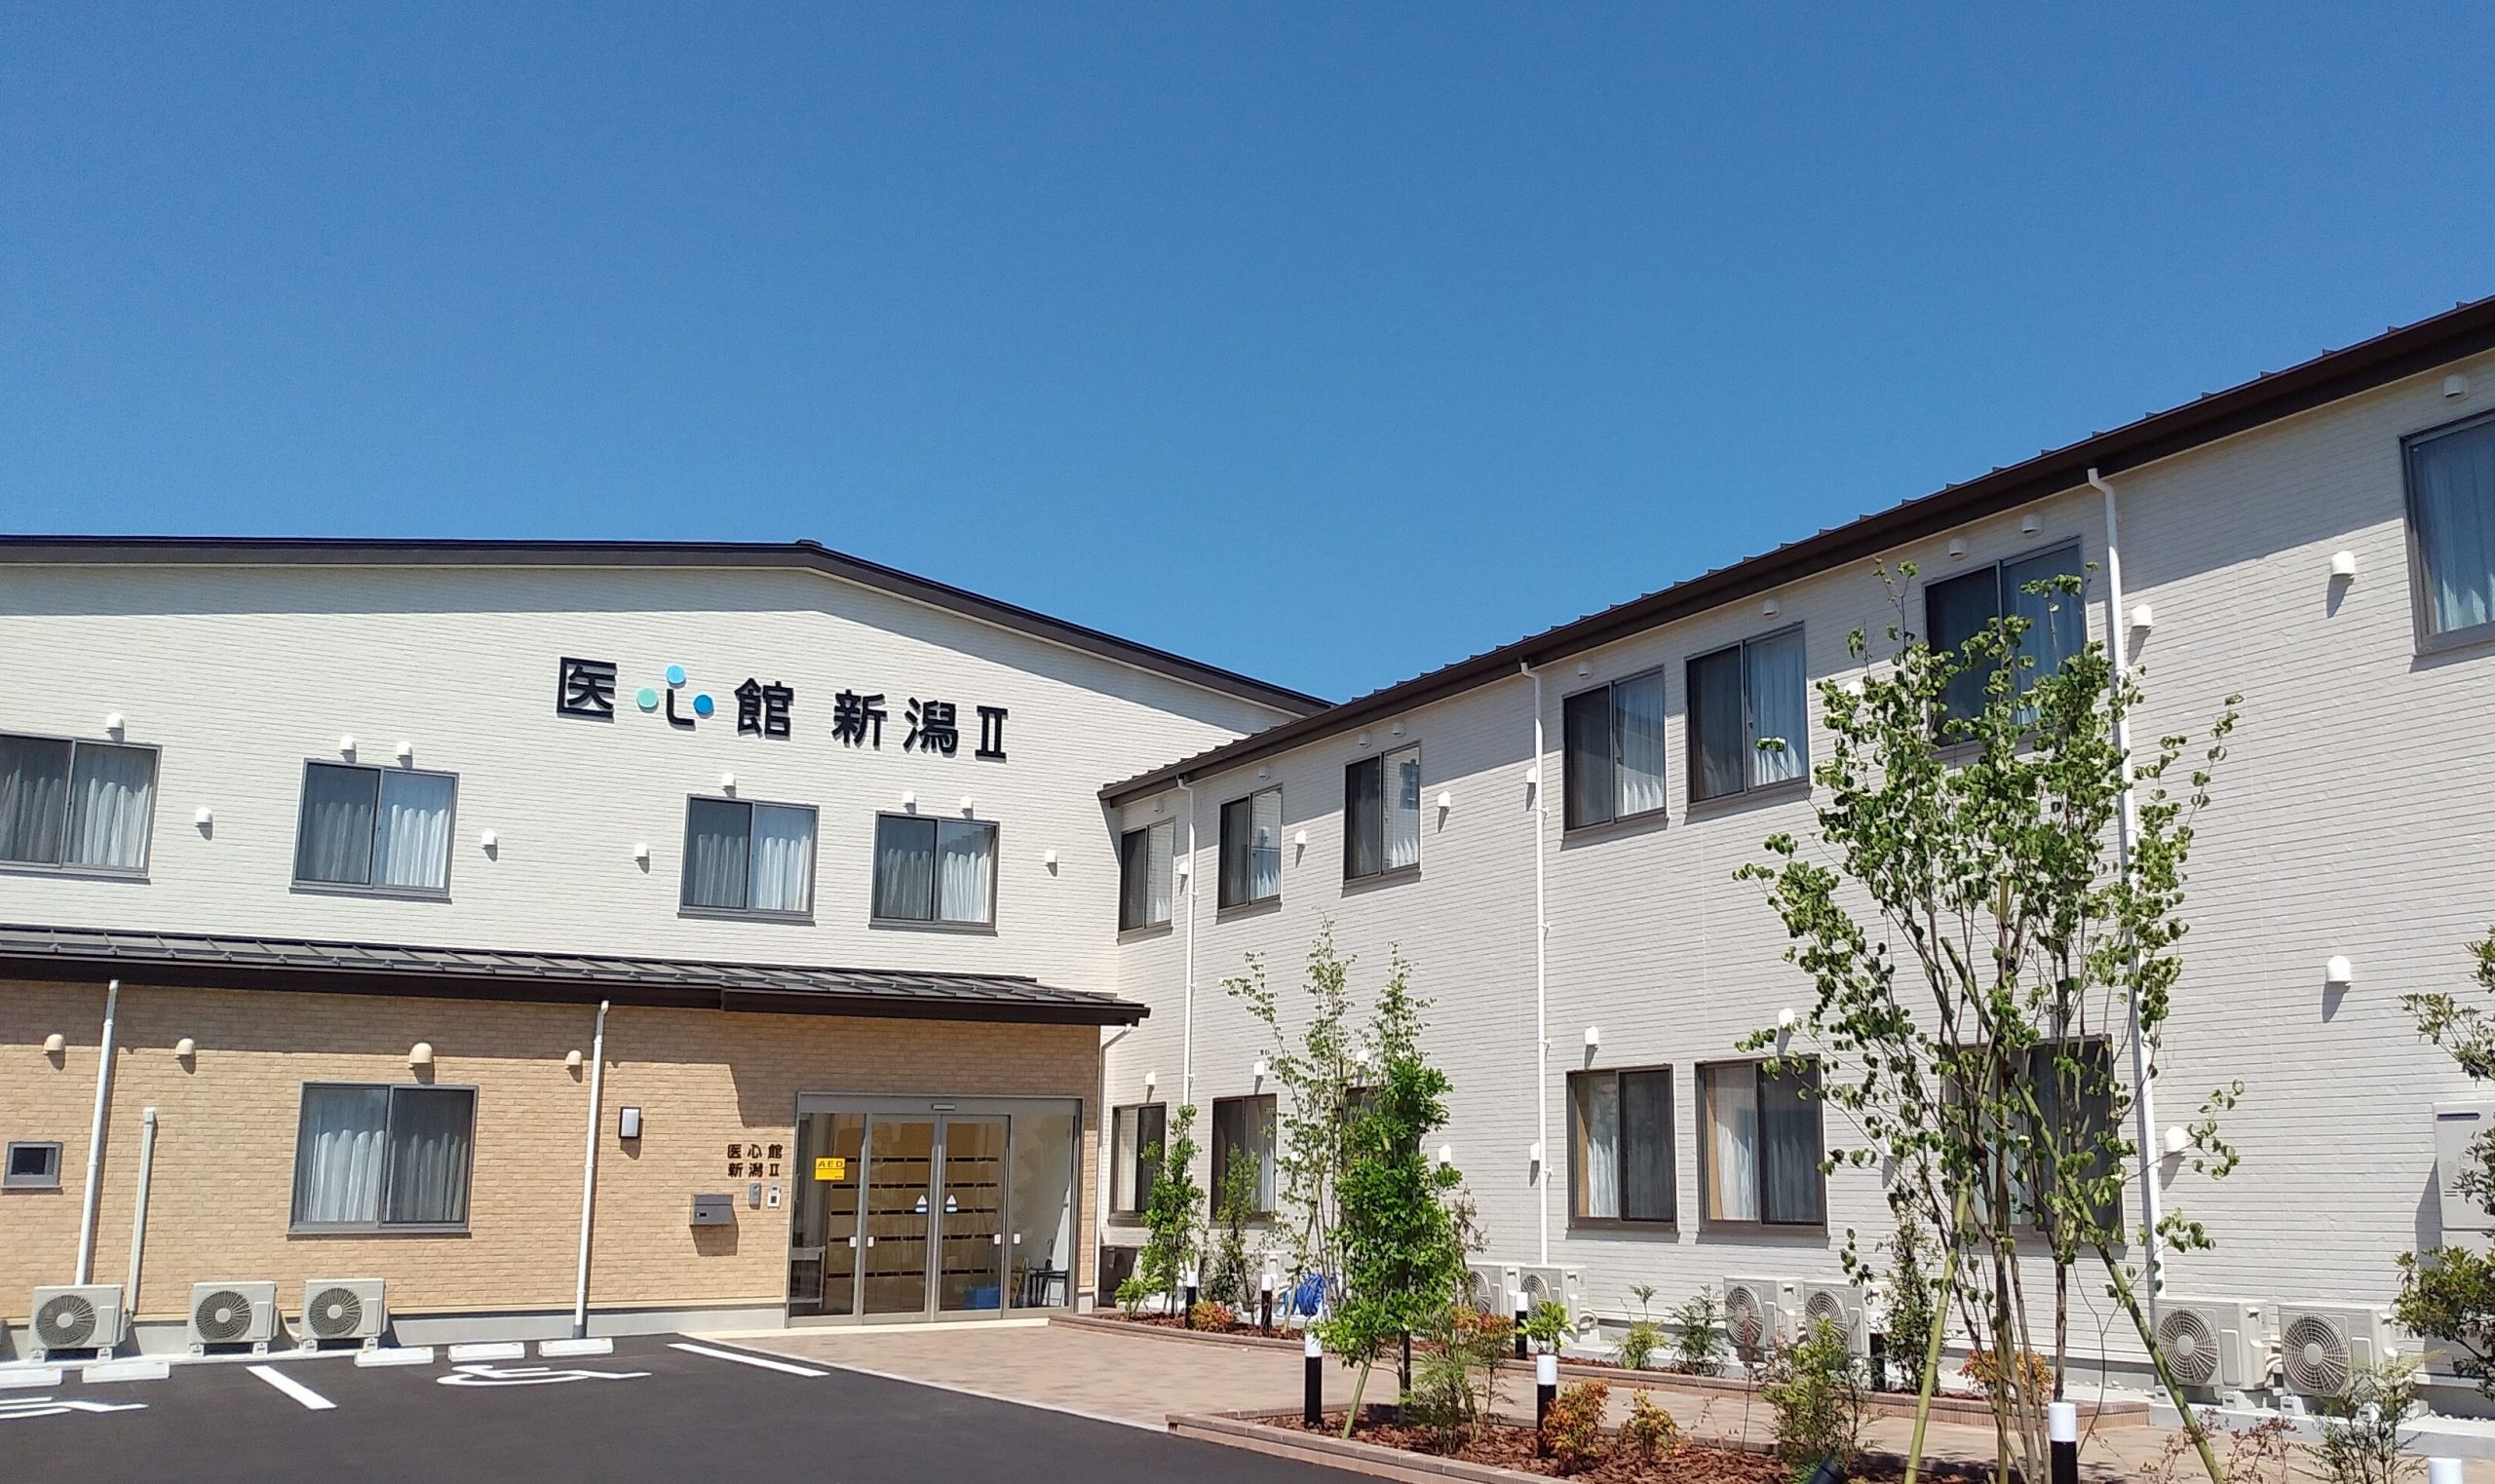 有料老人ホーム「医心館 新潟Ⅱ」を新潟県内２号店目としてオープンしました